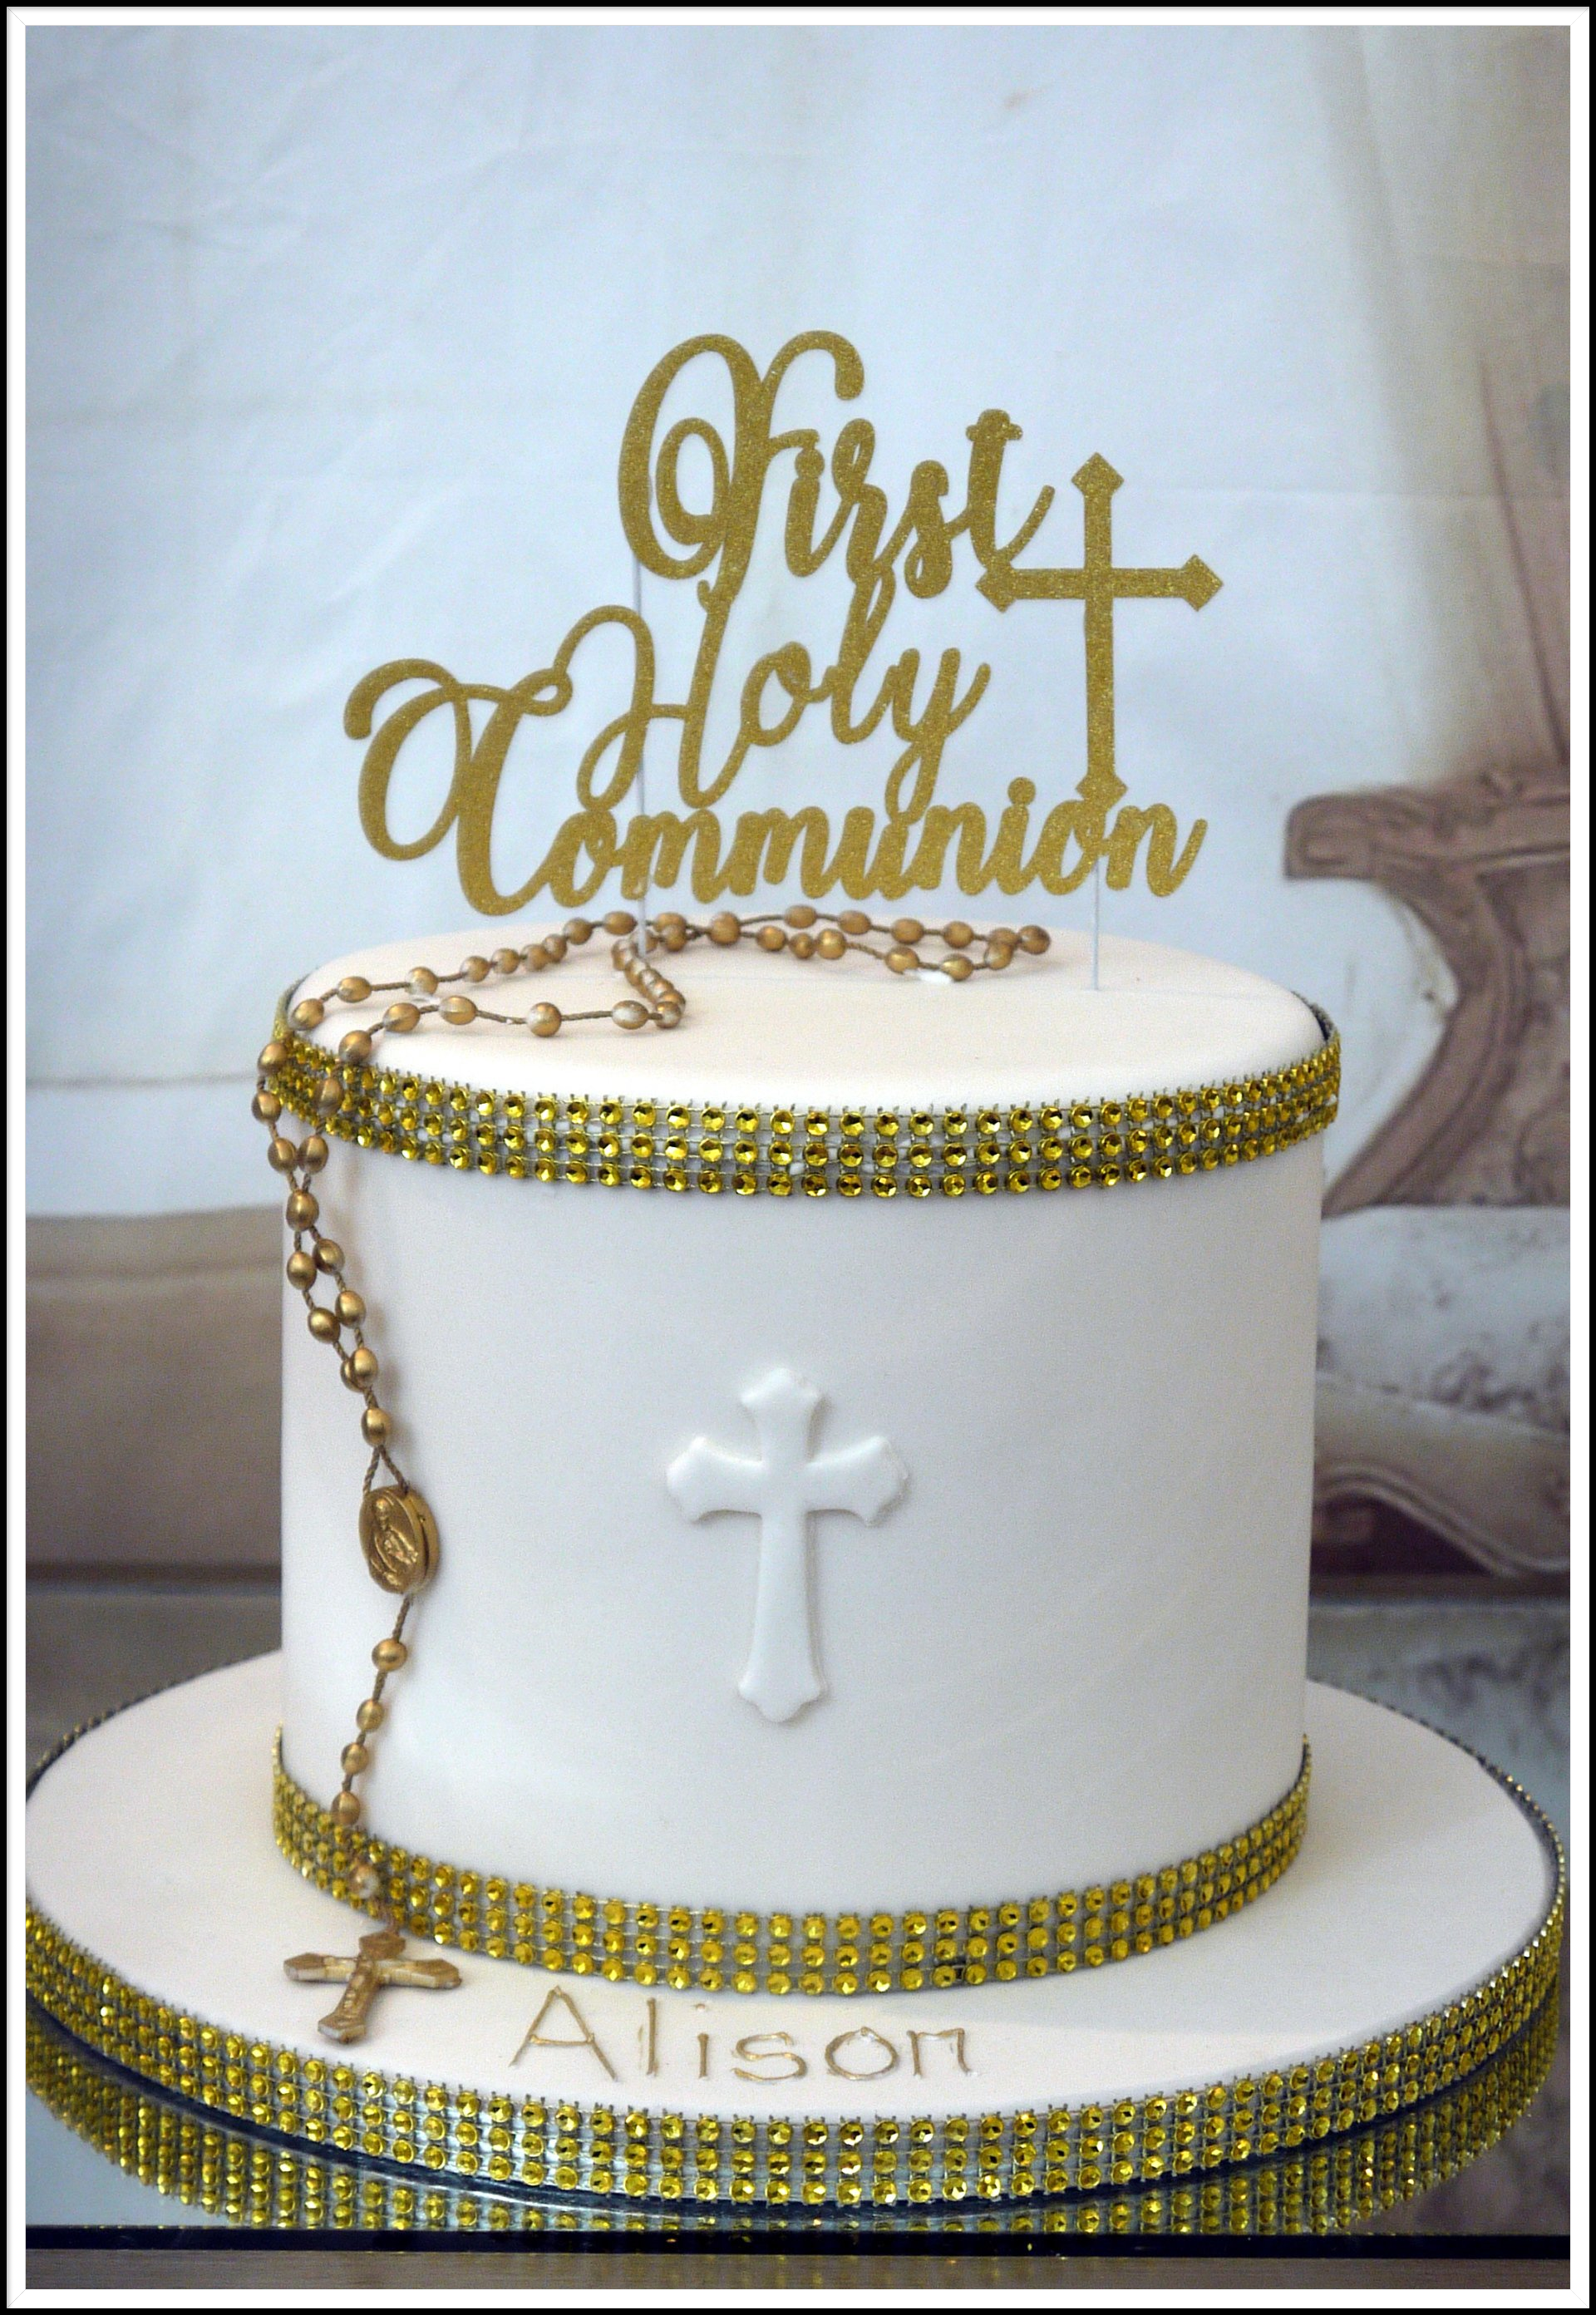 double deptn communion cake